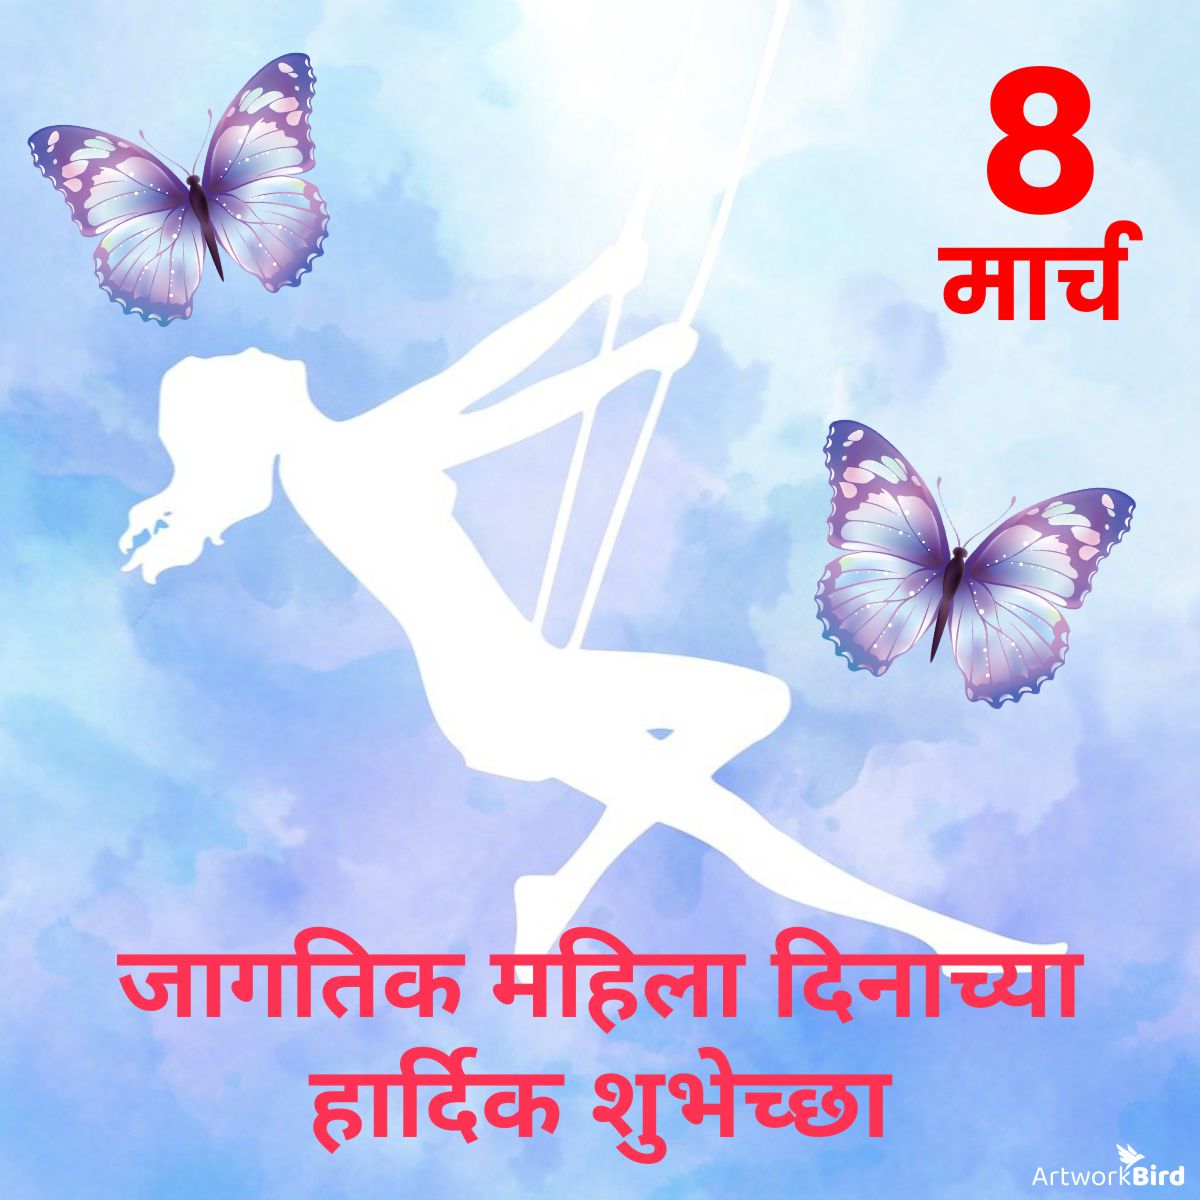 national womens day wishes marathi